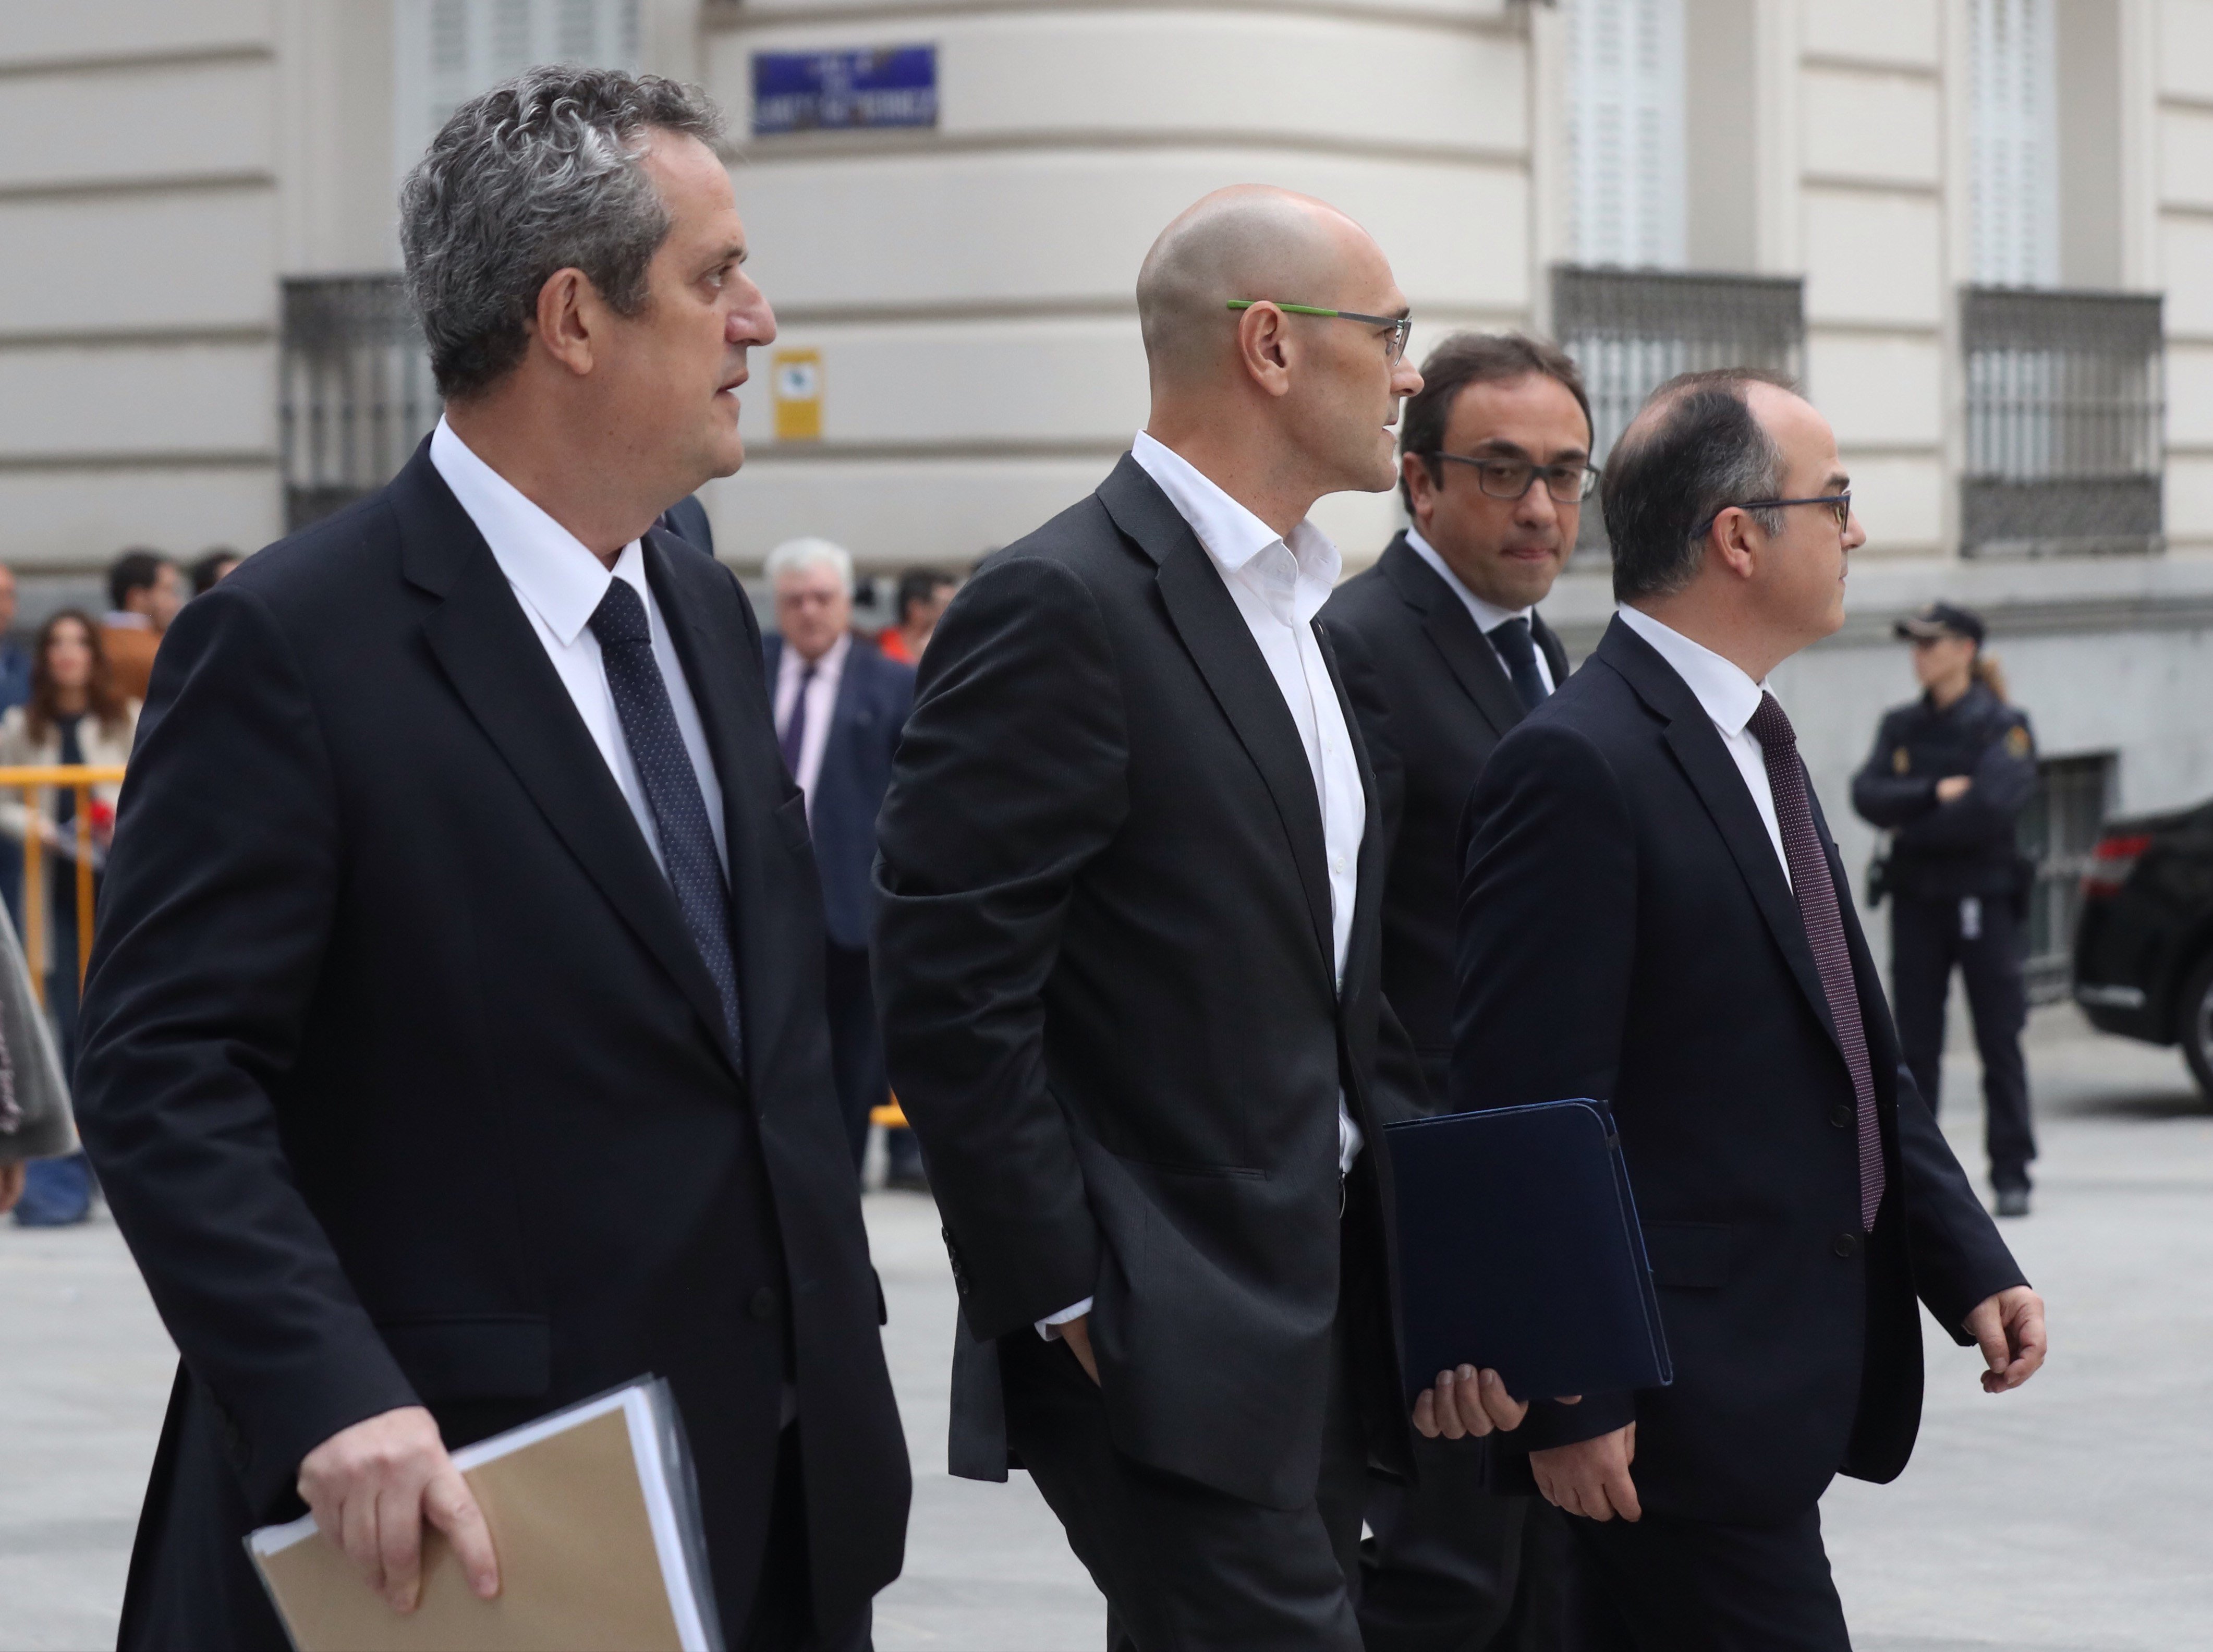 El abogado de Puigdemont: "En 33 años de profesión no había sentido tanta indefensión"